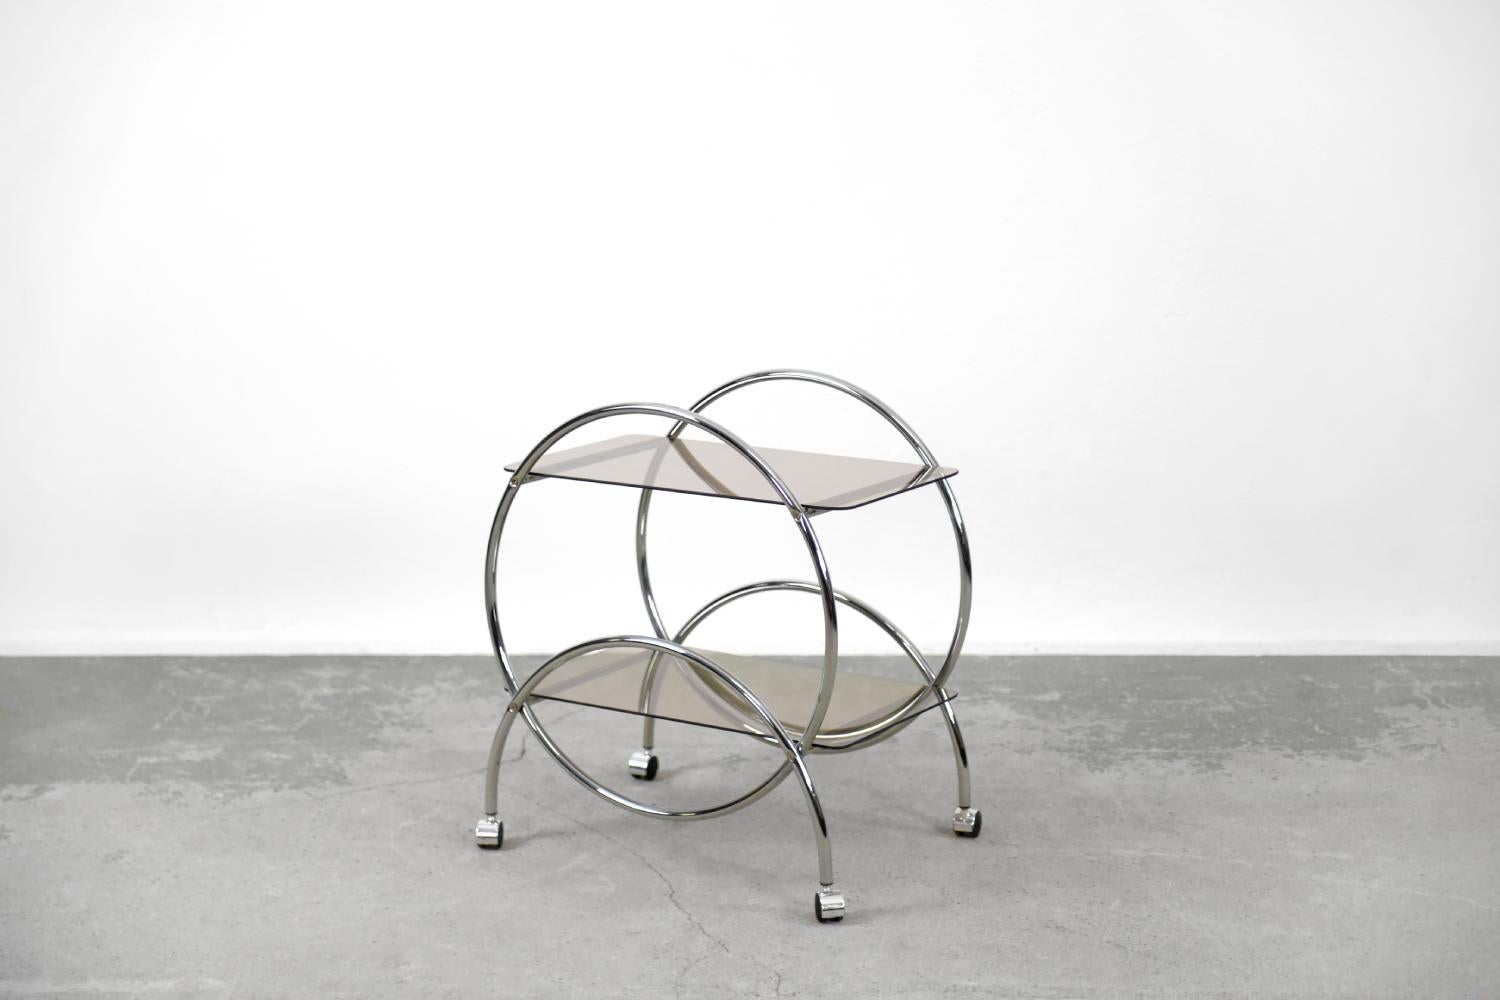 Dieser runde Stehtisch mit zwei Ebenen wurde in den 1970er Jahren von der schwedischen Firma IKEA hergestellt. Seine Form nimmt Bezug auf die Entwürfe der Bauhaus-Schule und des Art-dèco-Stils der Vorkriegszeit. Das geometrische Gestell ist aus